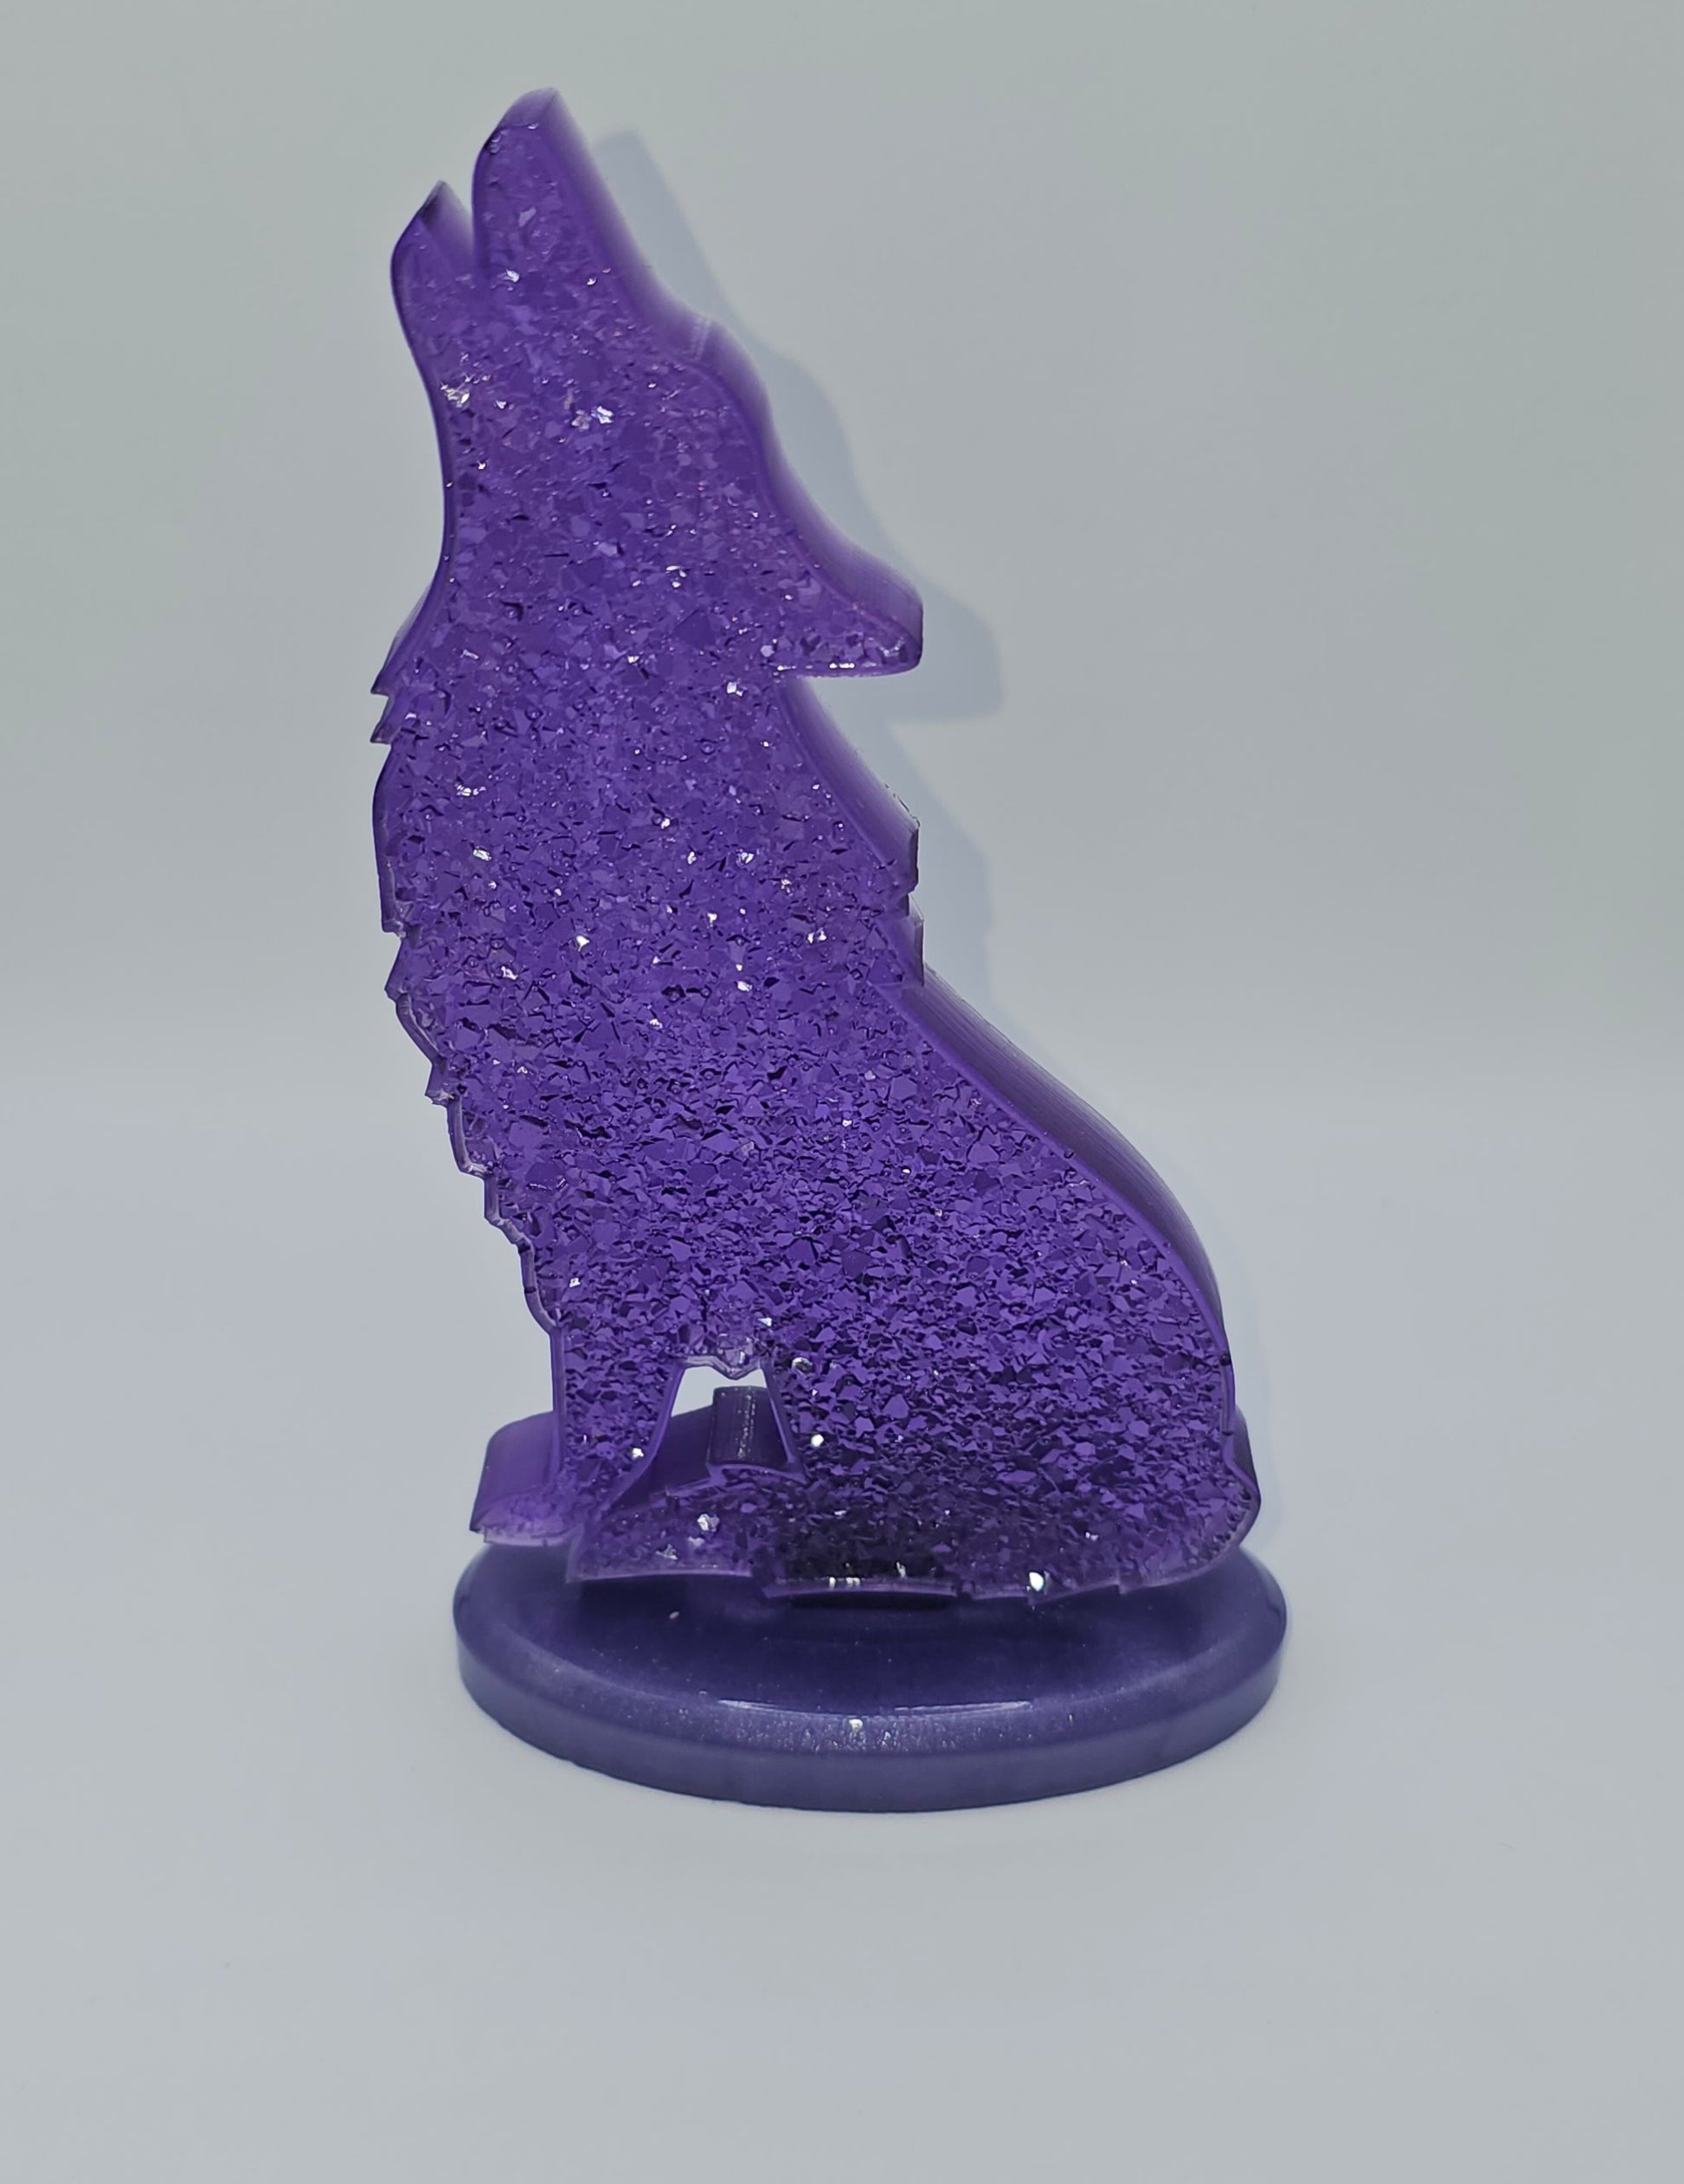 Loup effet cristaux violet en résine époxy